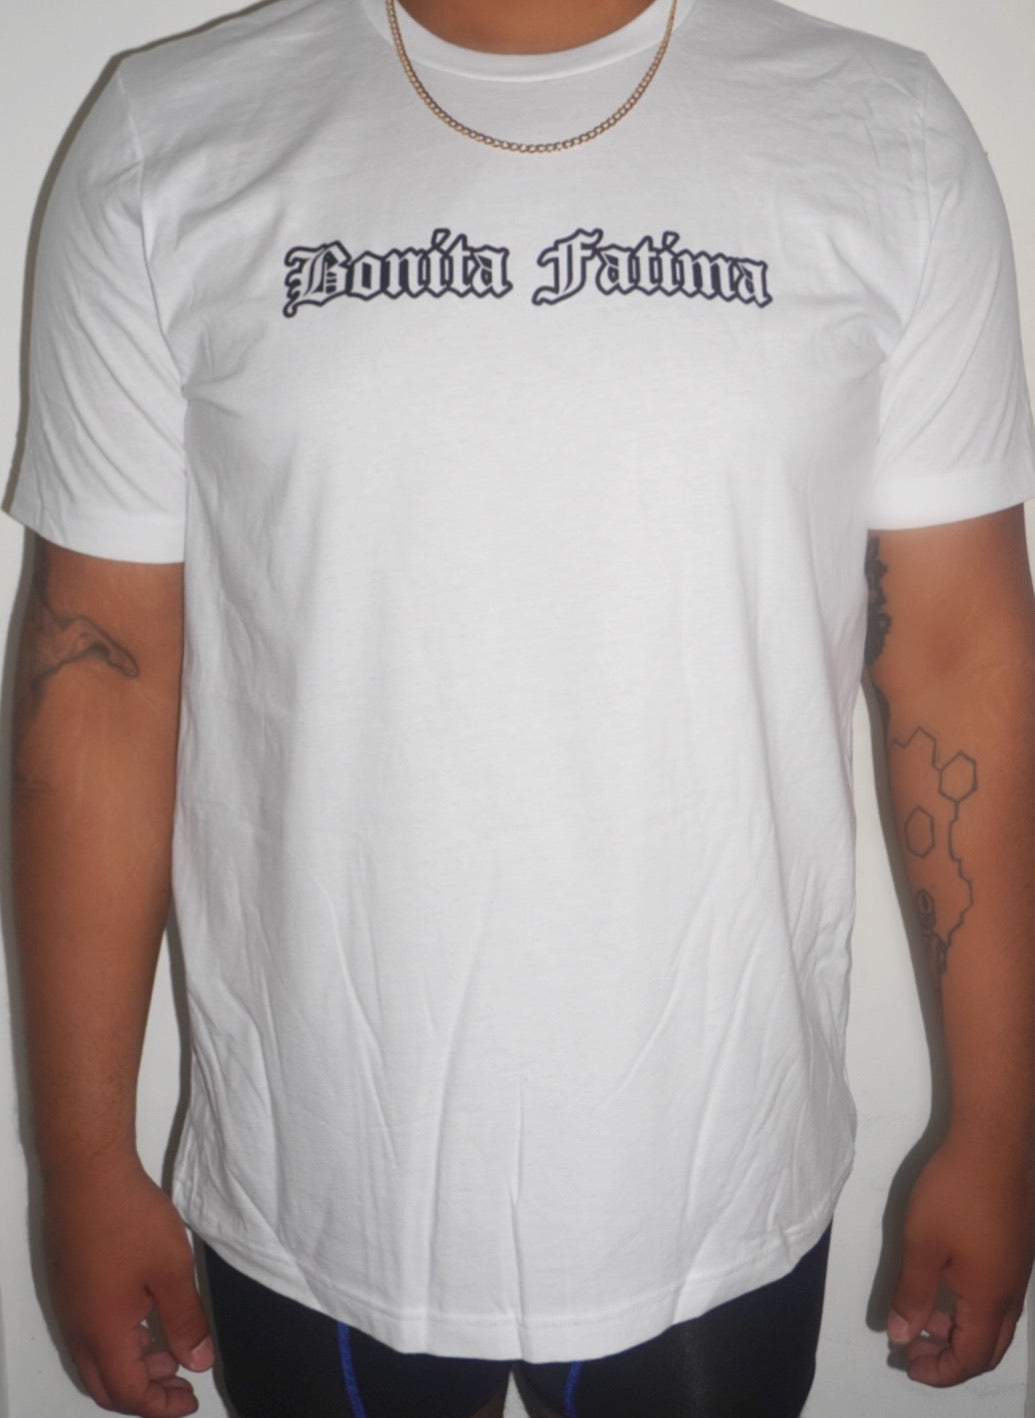 Bonita Fatima white T-shirt